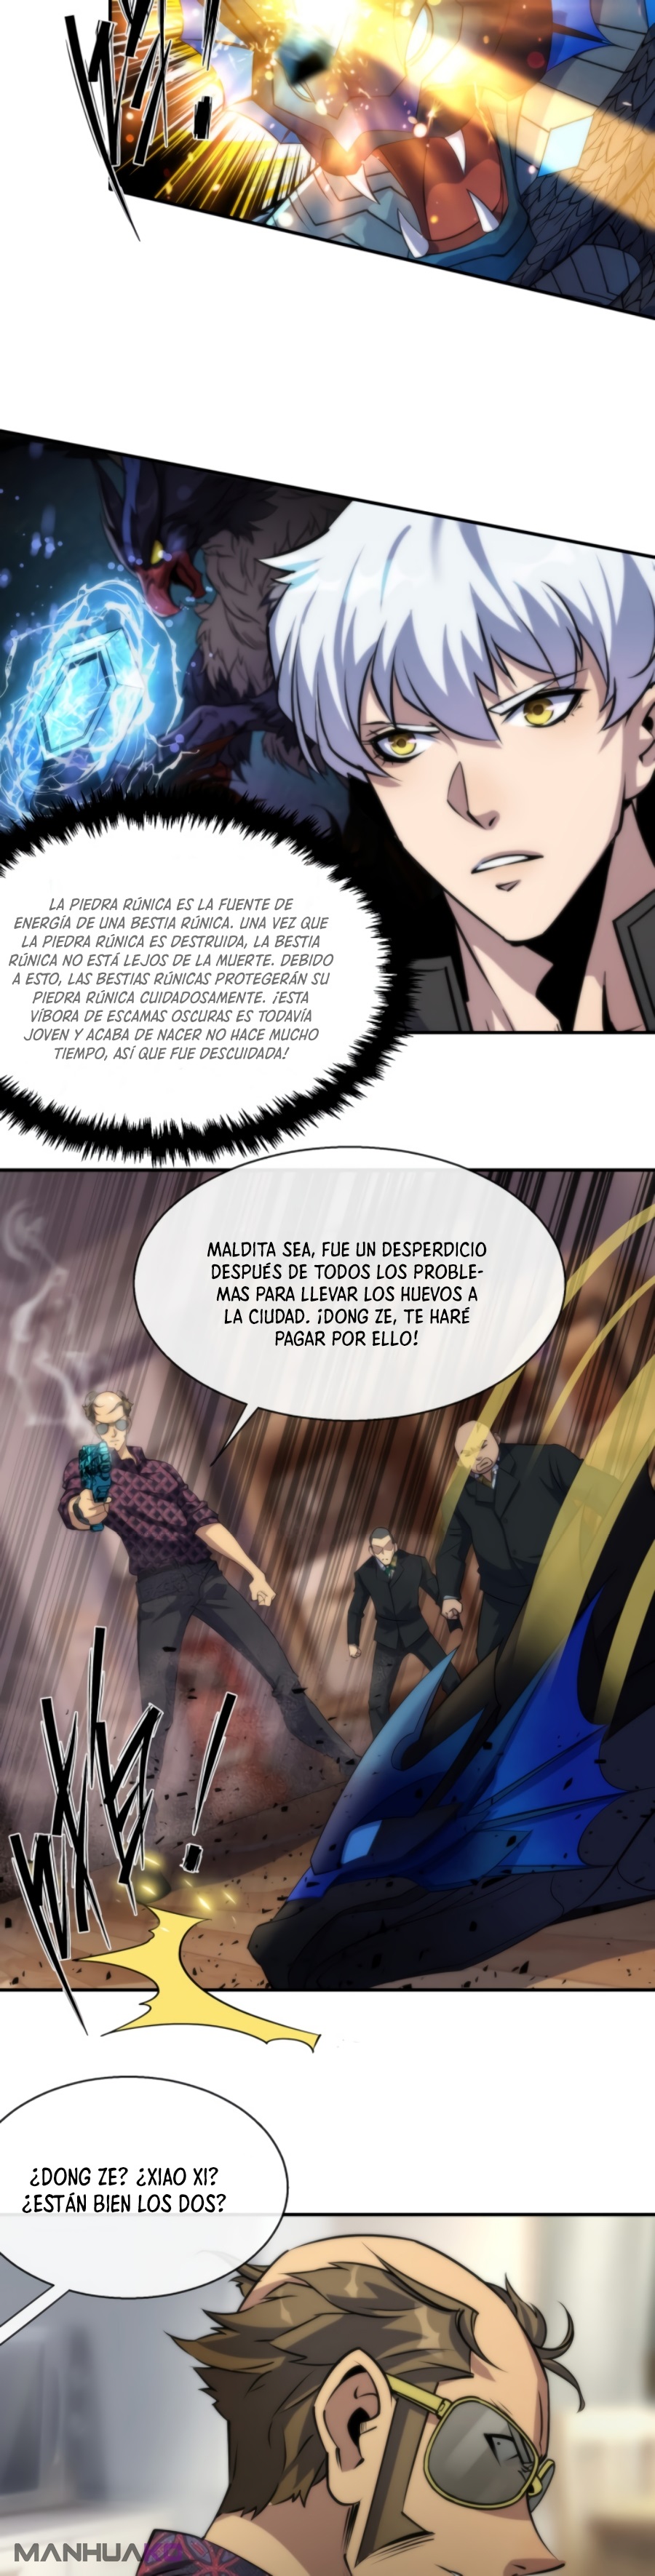 Manga Rey de las runas Chapter 9 image number 8